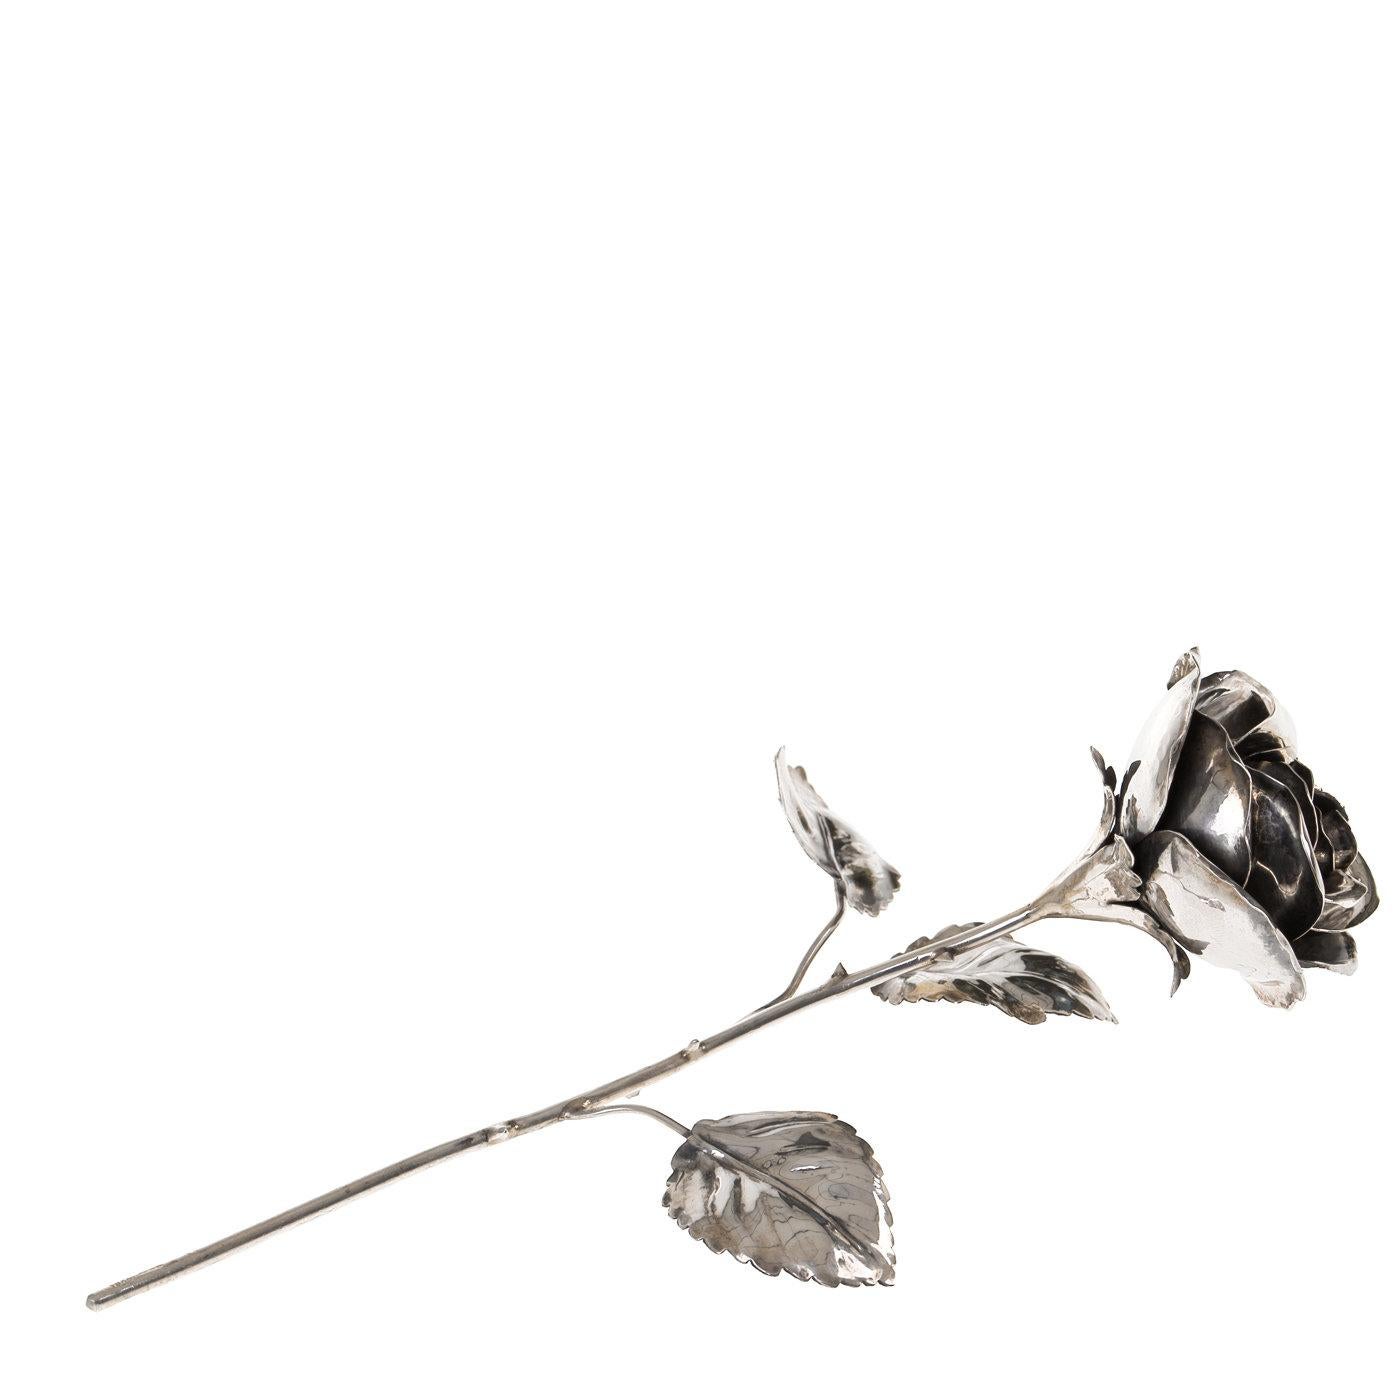 Diese elegante Rose aus Sterlingsilber ist symbolisch und dekorativ zugleich und wird von der Florentiner Silberschmiede der Gebrüder Lisi mit viel Geschick gefertigt. Die Blume wird von Hand geprägt und graviert, um ein Höchstmaß an Details zu